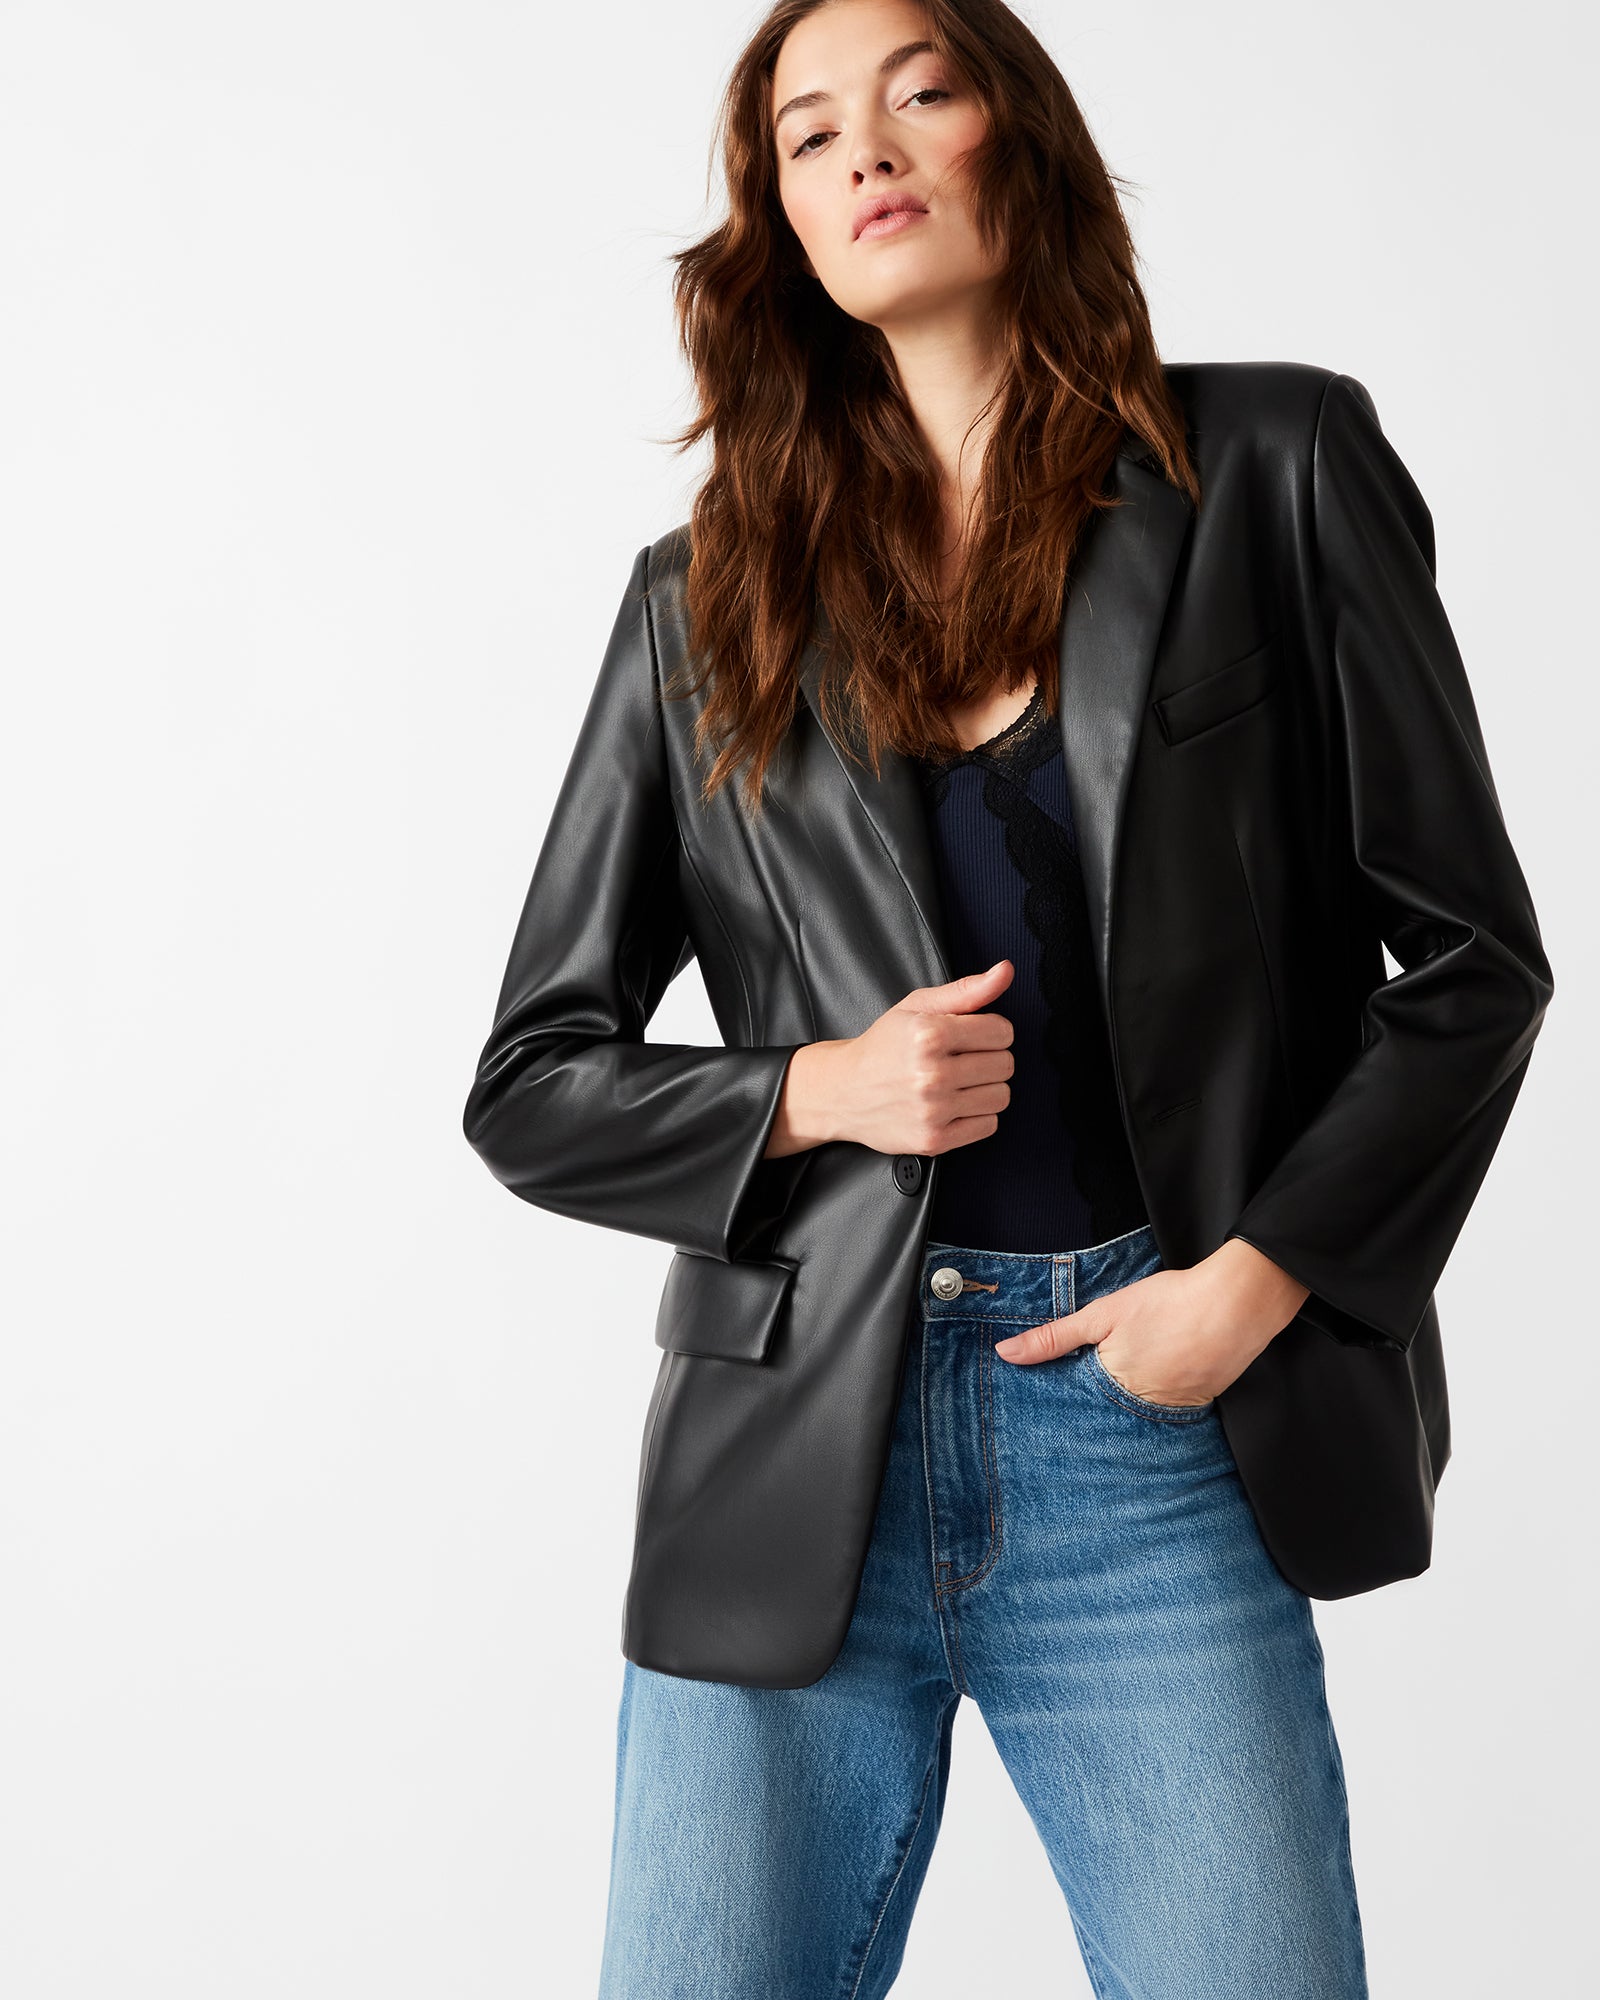 Jackets & Coats | Designer Women's Jackets, Blazers, Coats & Tops